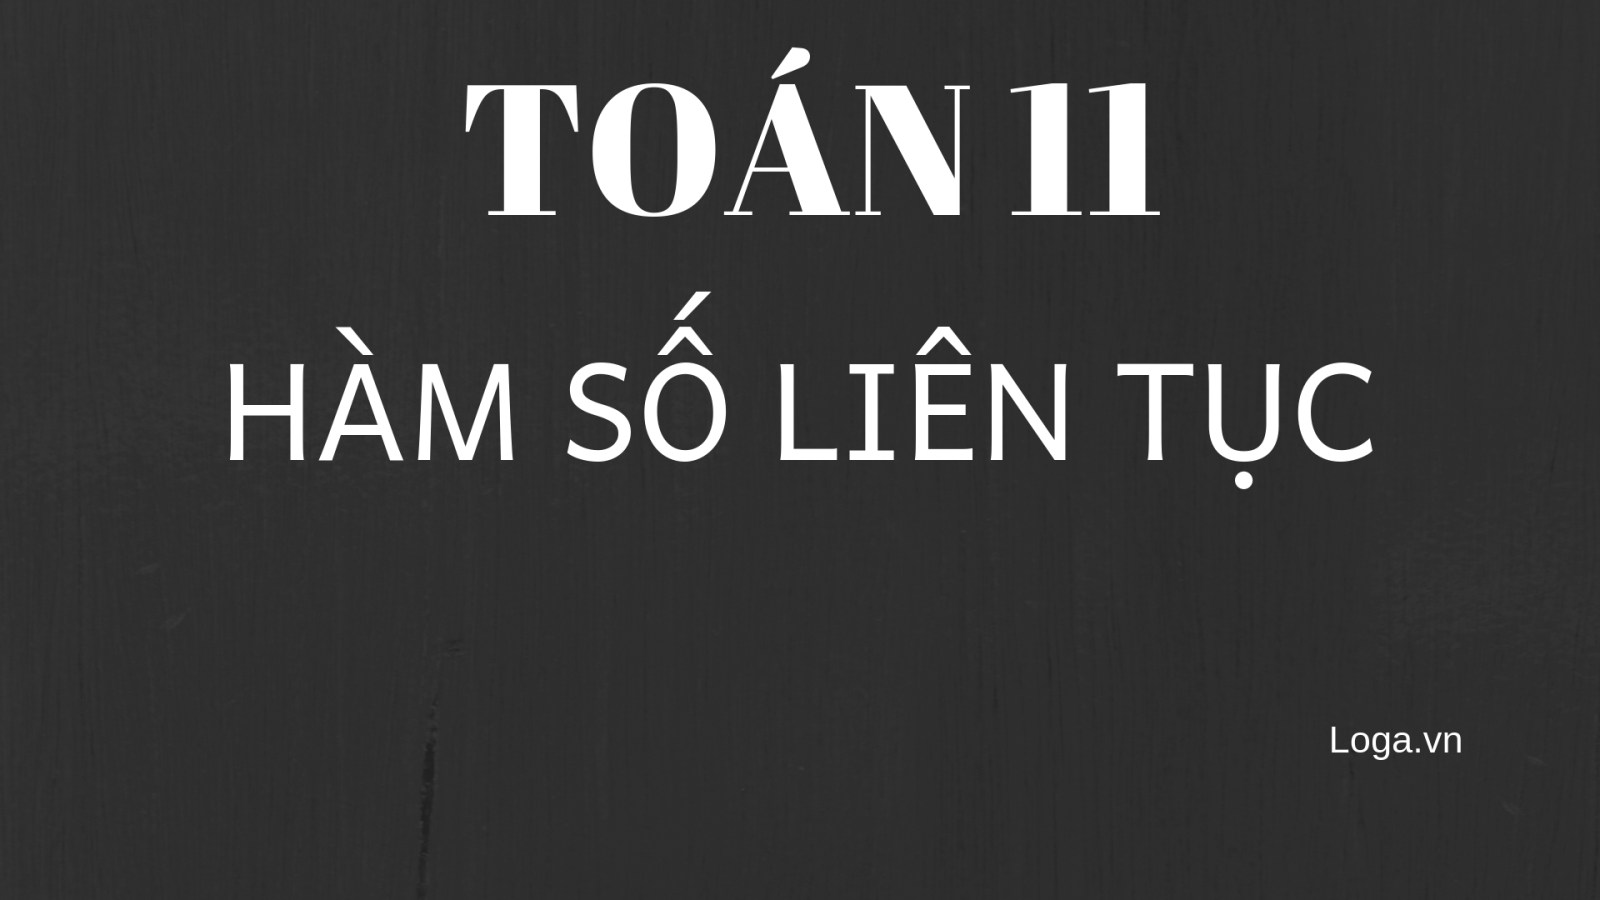 toan-11-ham-so-lien-tuc